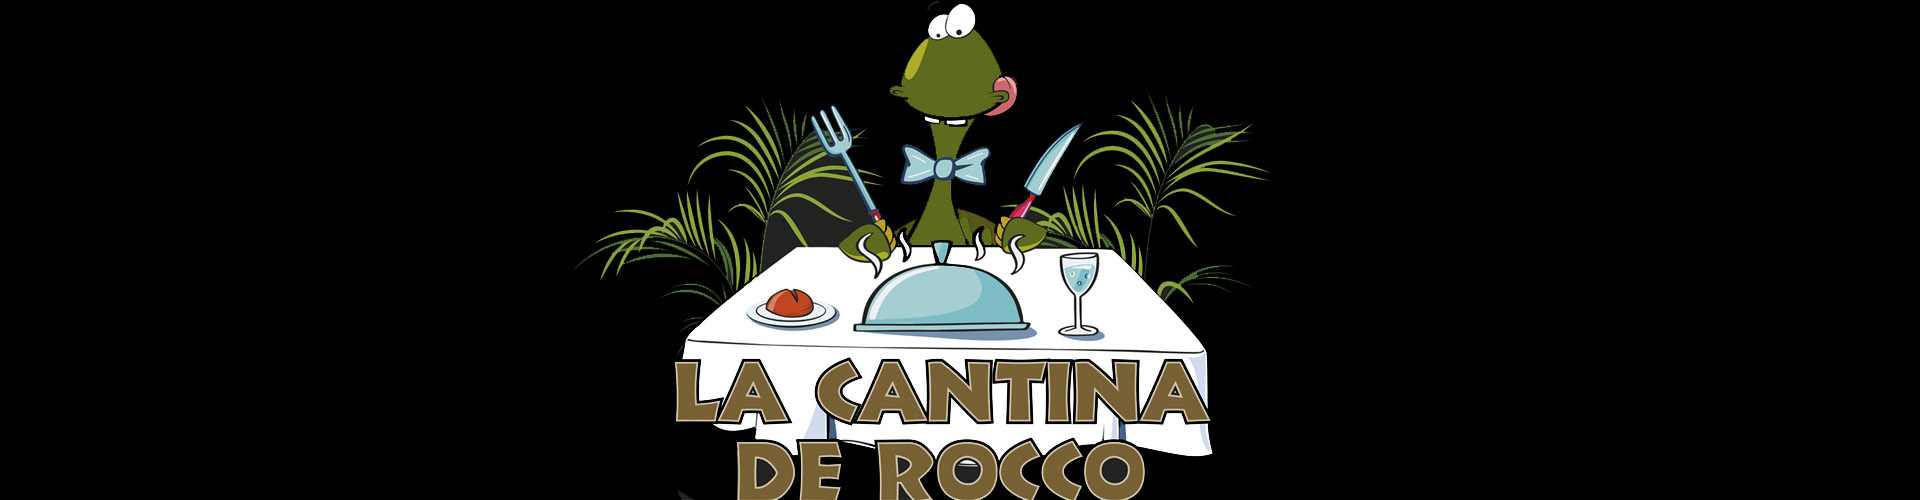 La Cantina de Rocco